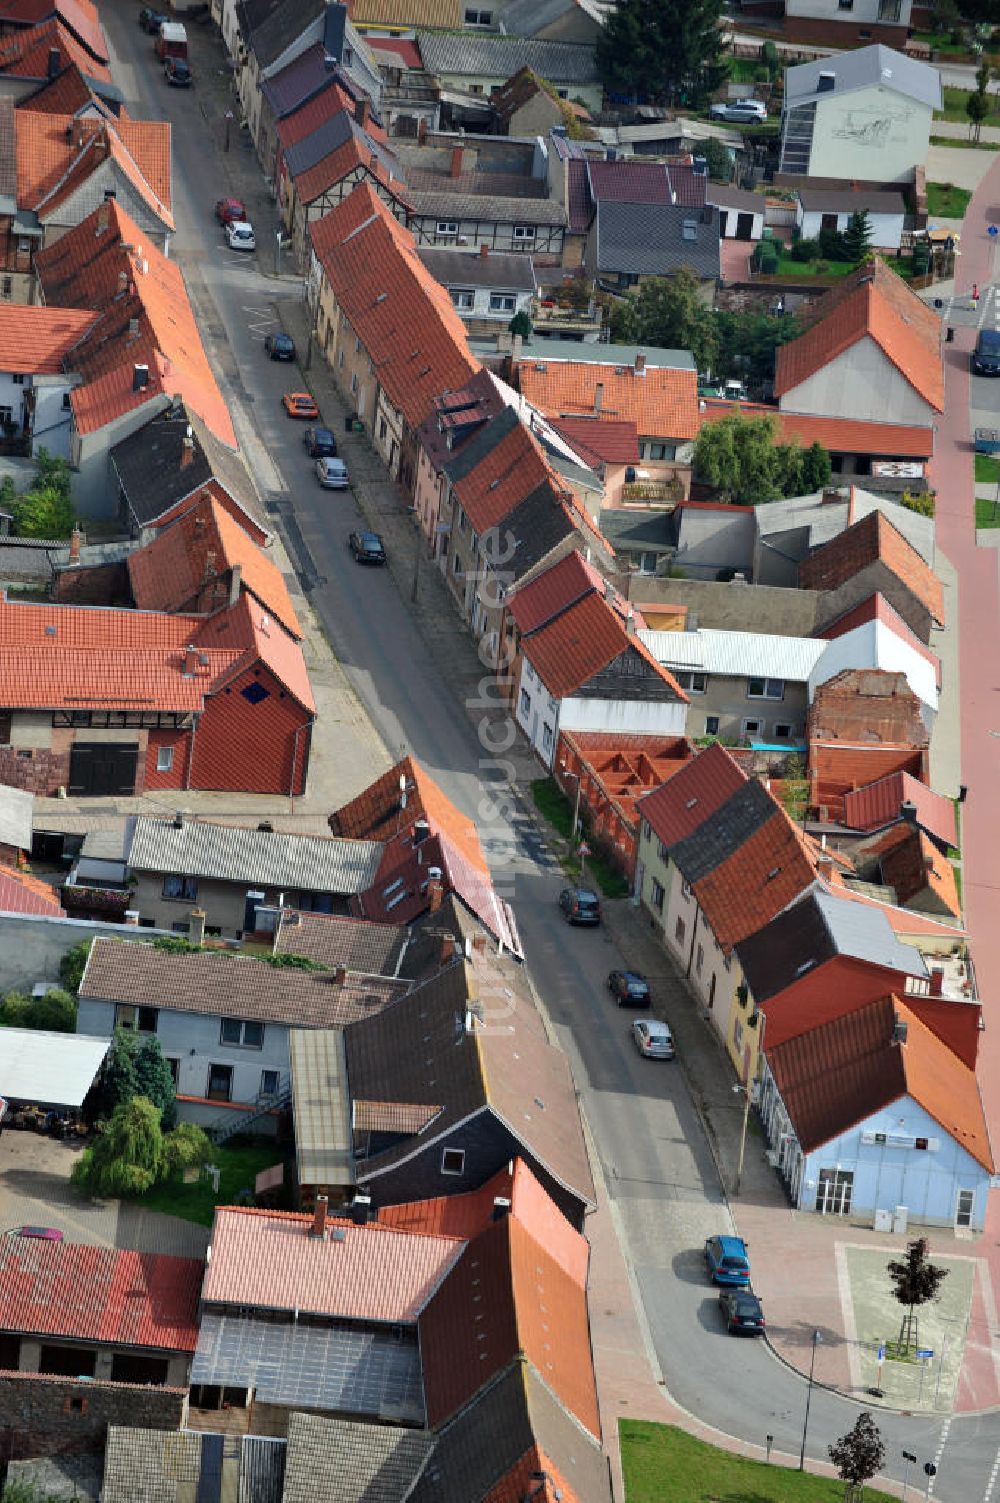 Luftbild Kelbra - Wohnsiedlung aus Fachwerkhäusern in der Innenstadt von Kelbra in Sachsen-Anhalt